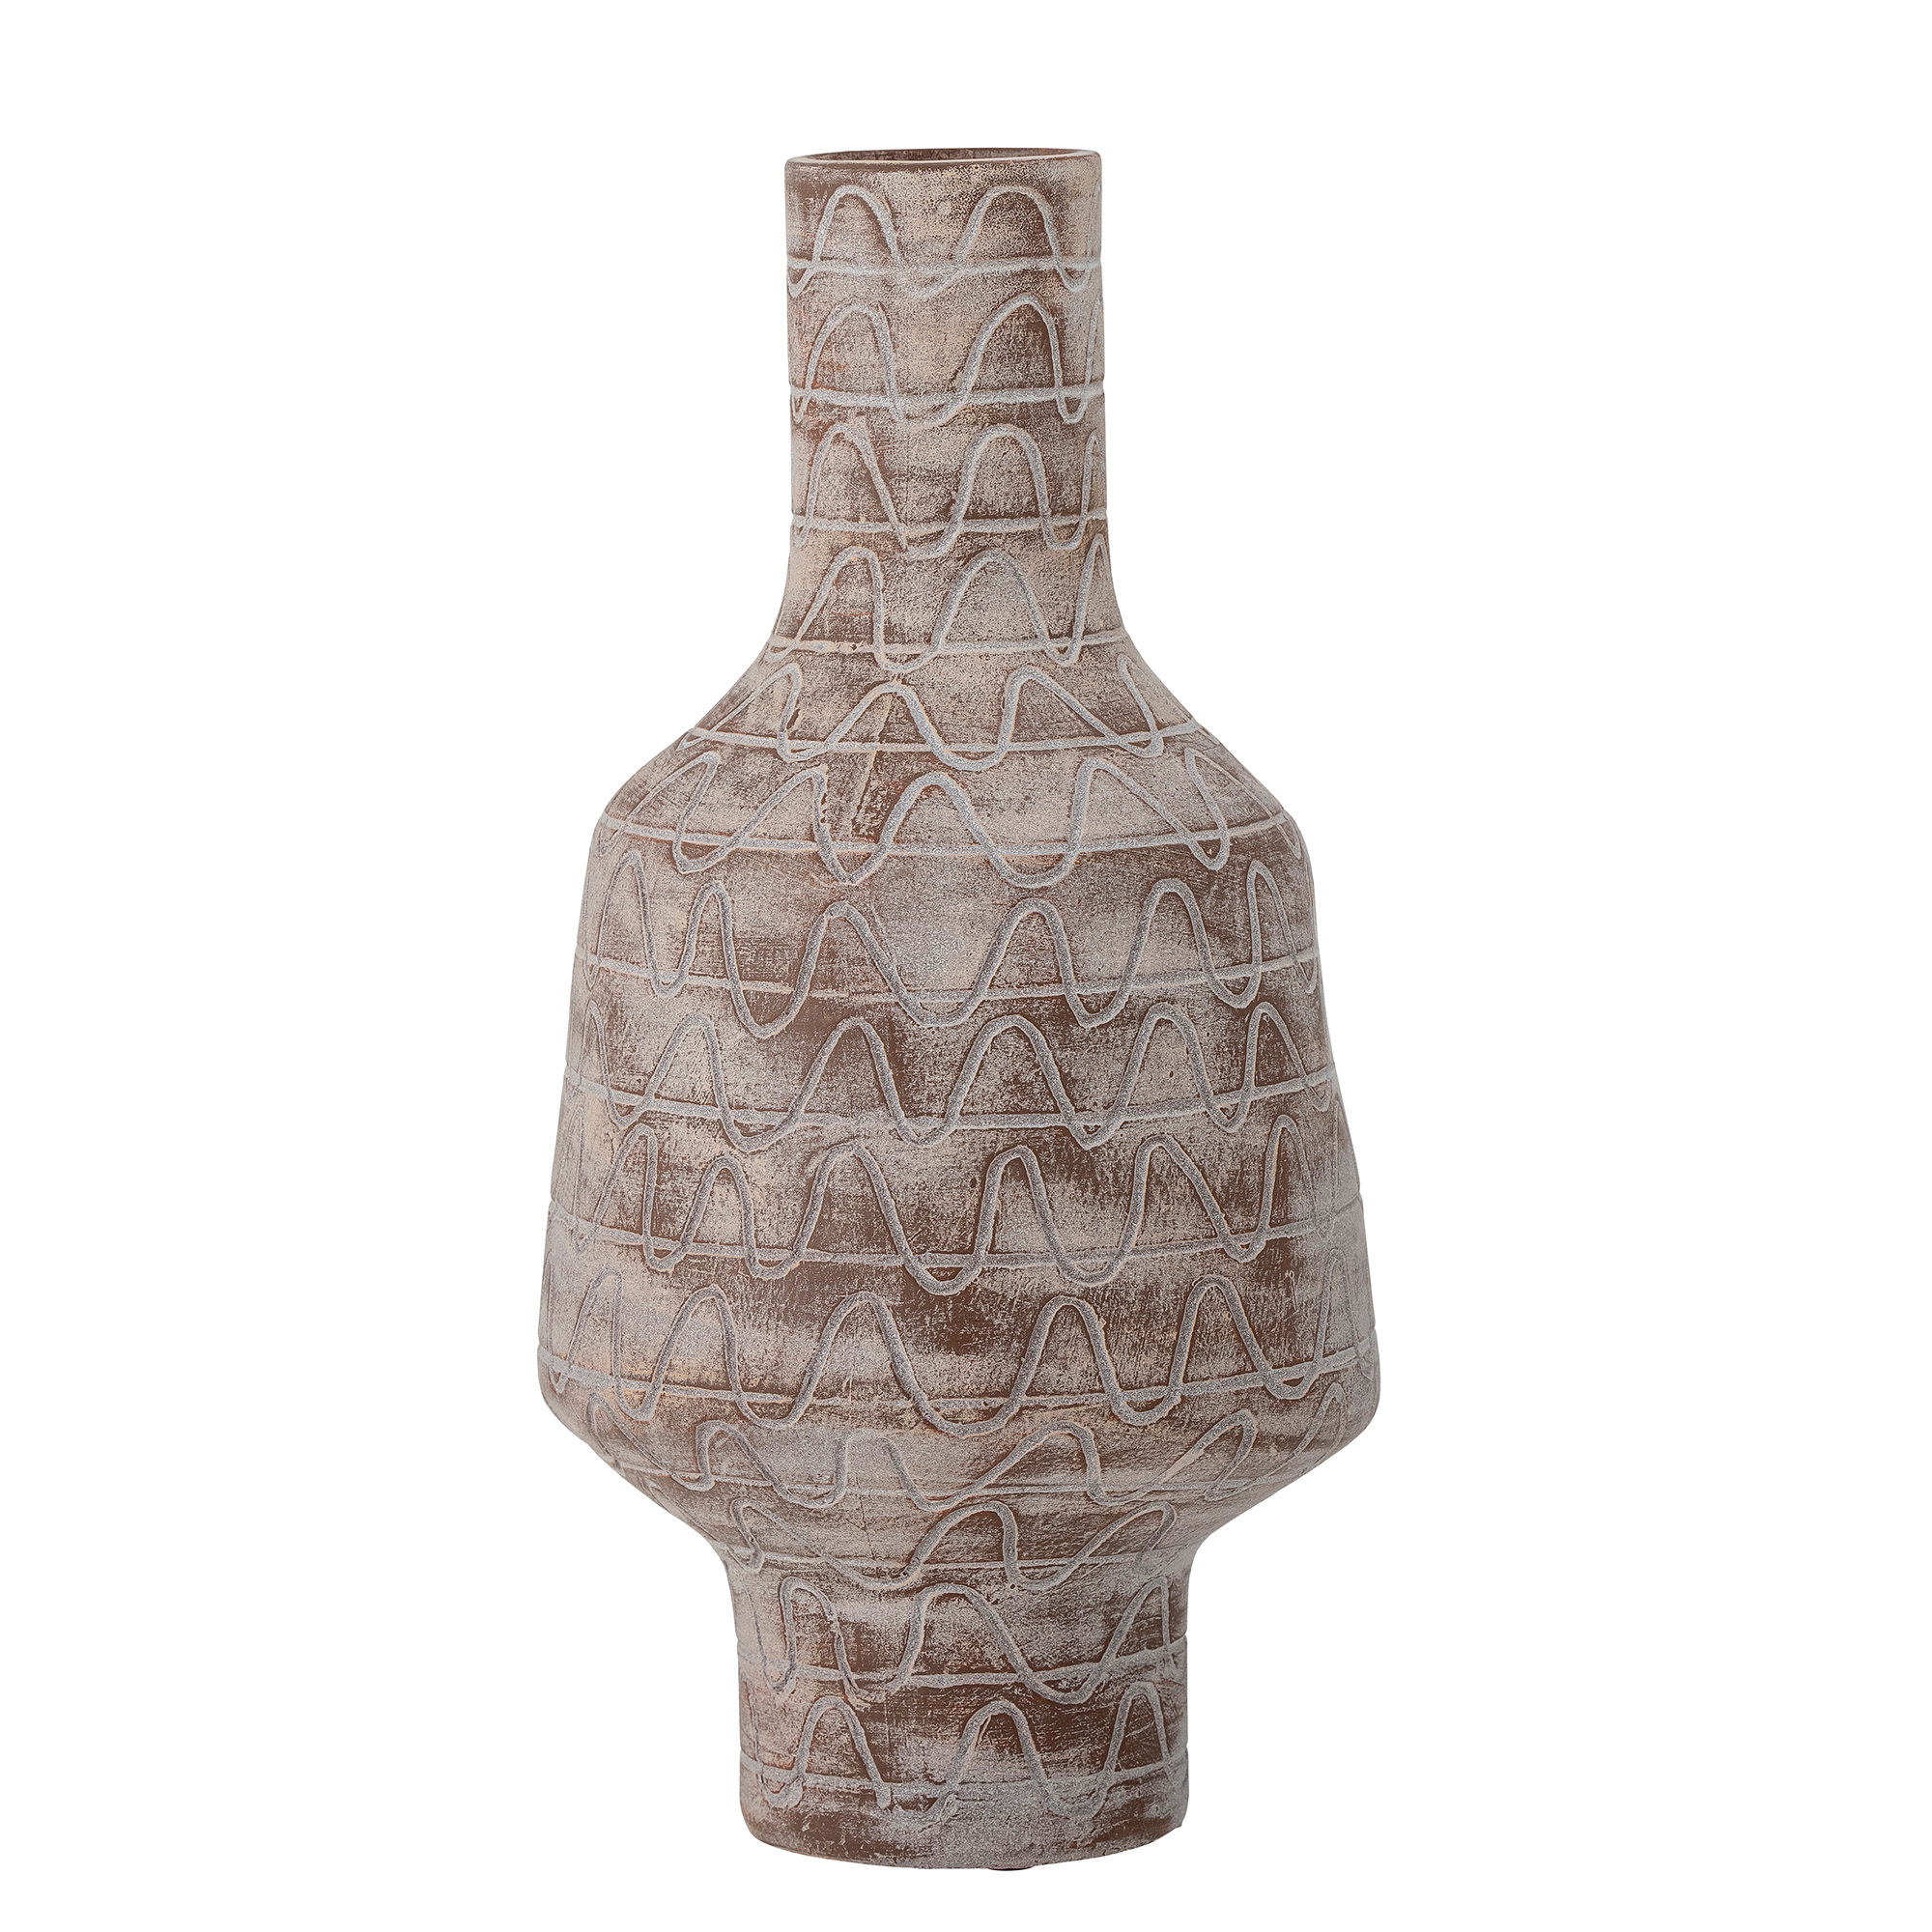 CREATIVE COLLECTION Saku Vase, Natur, Keramik